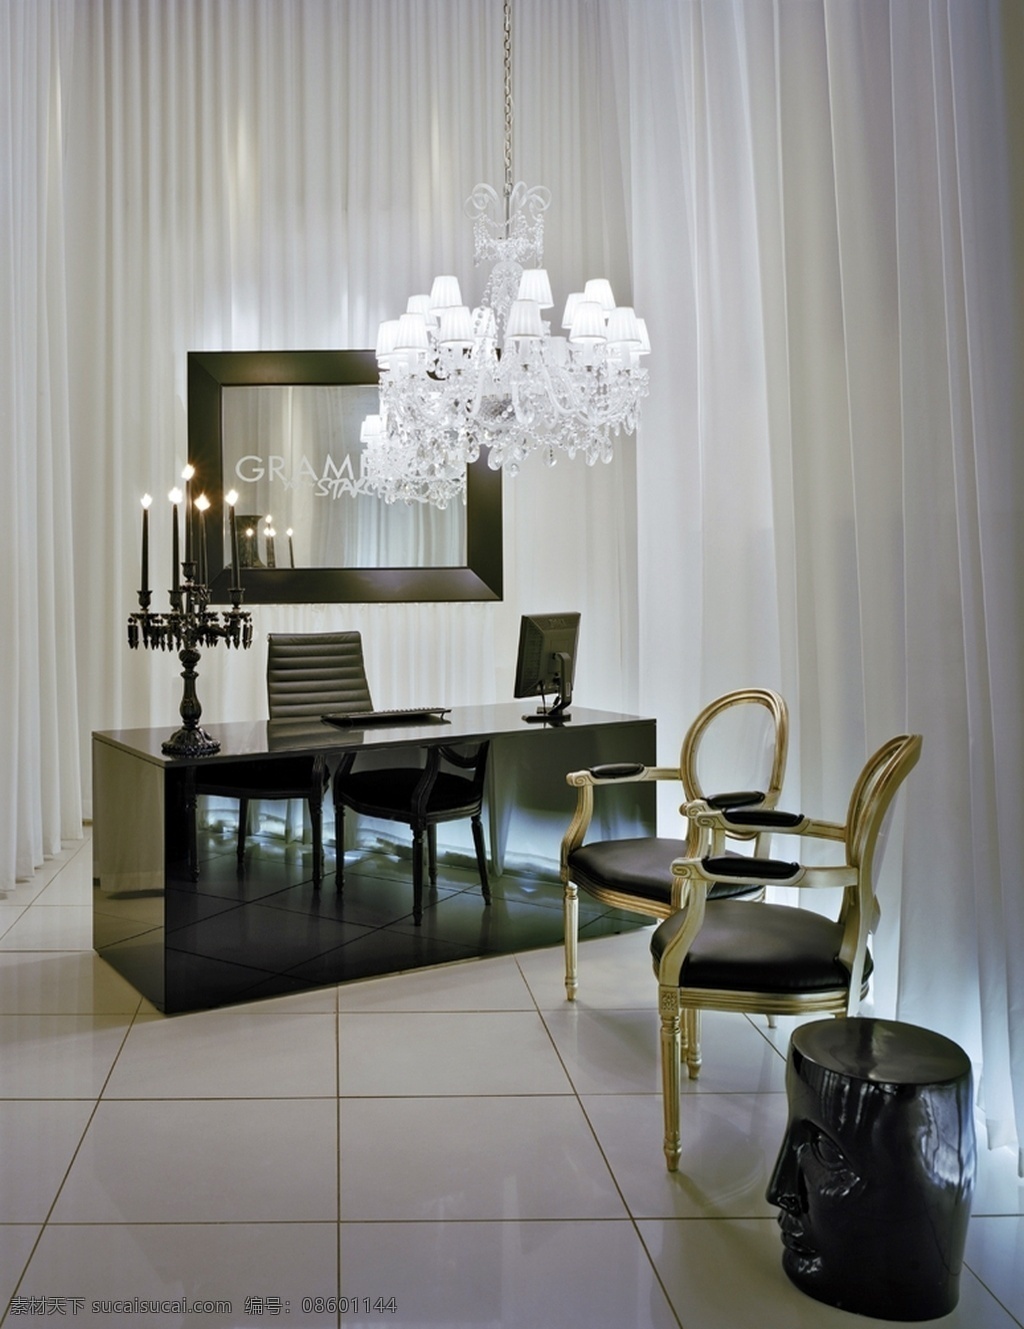 别墅 室内 书房 现代 潮流 吊灯 窗帘 装修 效果图 立体空间 白色主体 黑色书桌 创意蜡烛灯 头像座椅